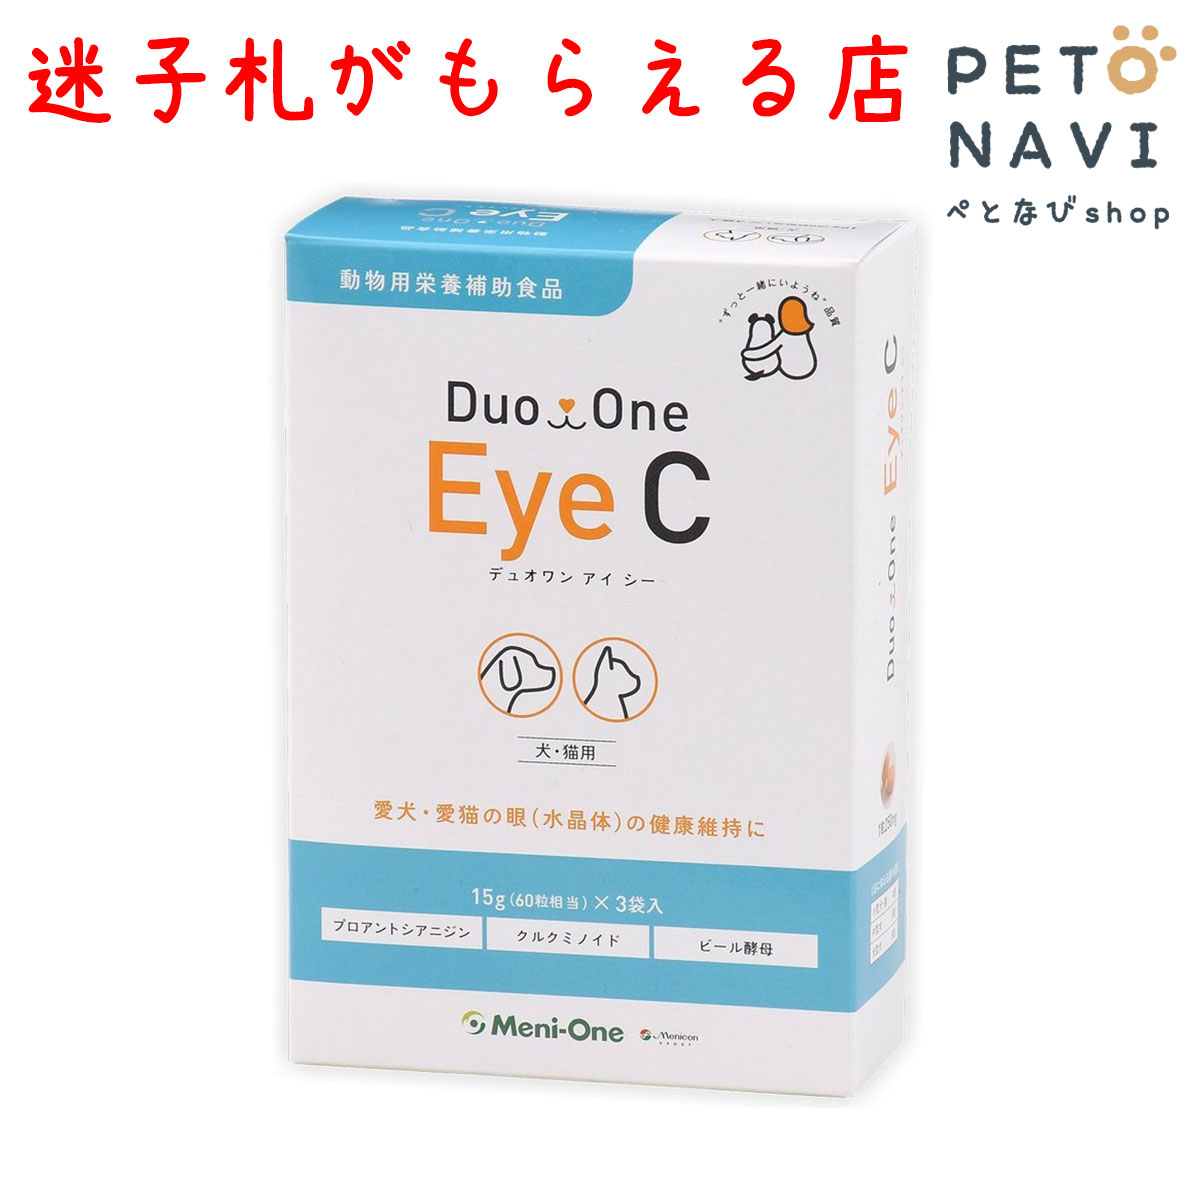  qDv[g []DuoOne Eye C fI AC V[  ELp 15g~3 j Eye care2 